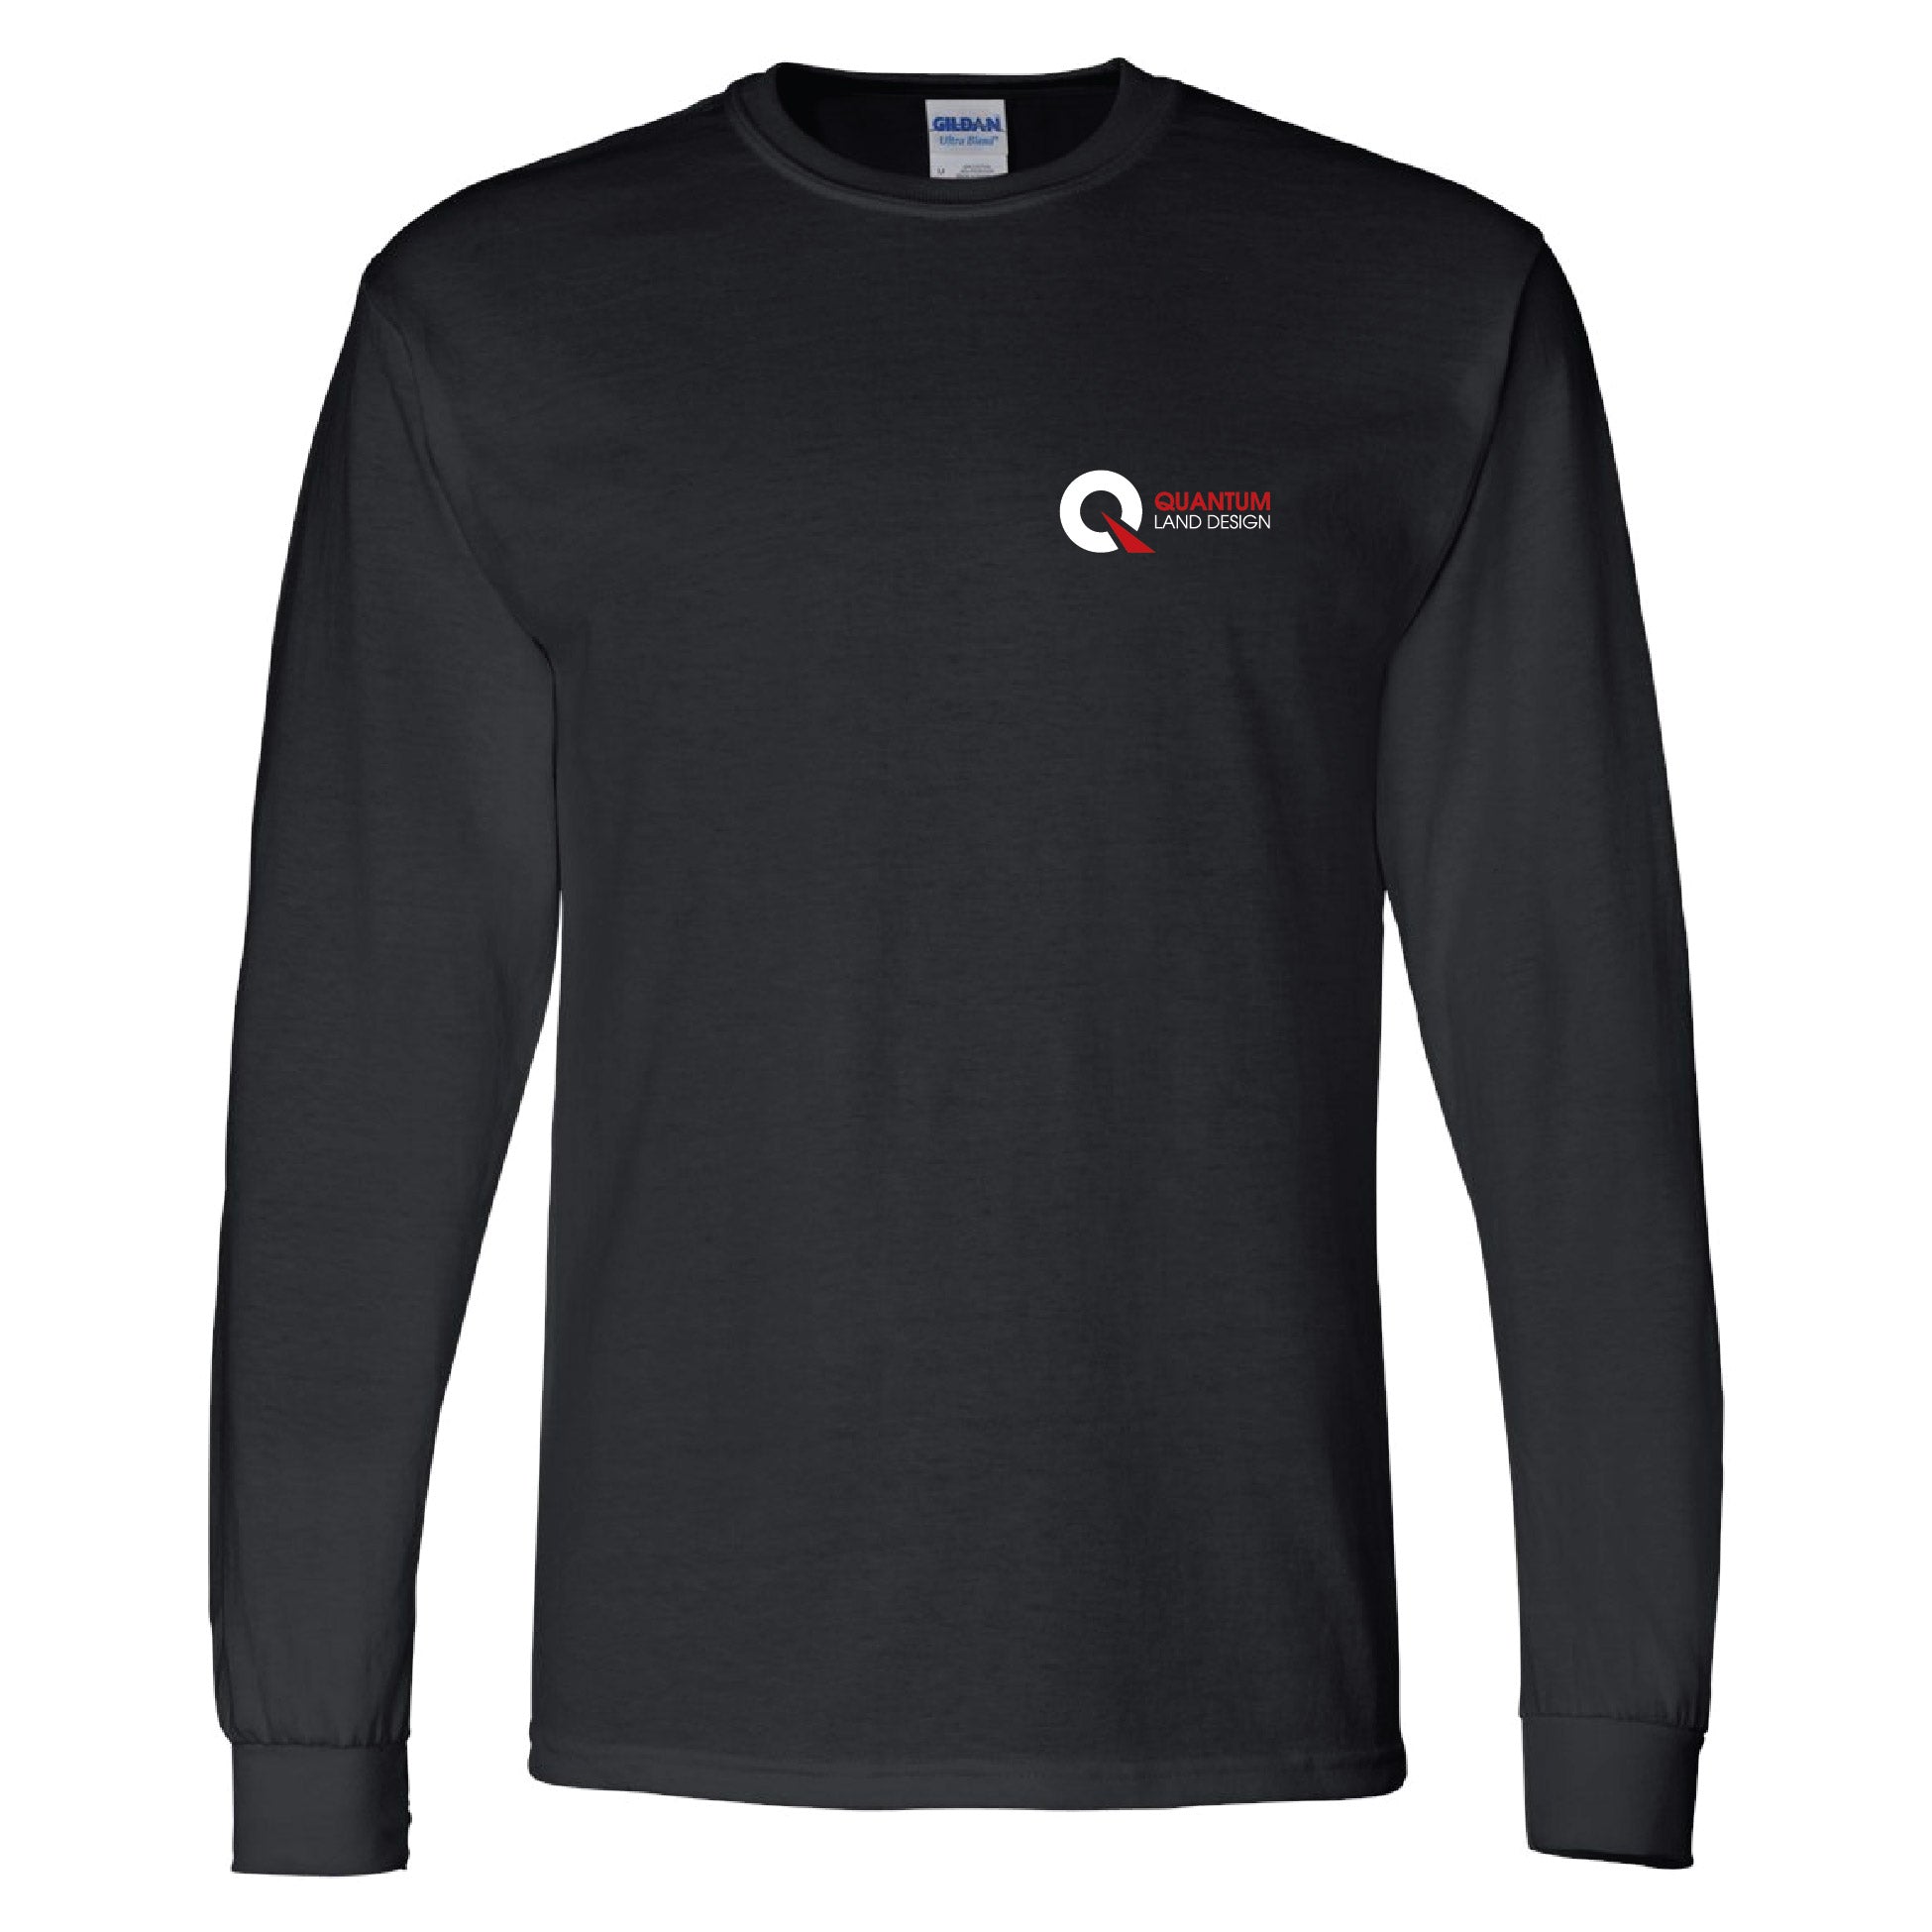 Quantum Land Design Longsleeve T-Shirt